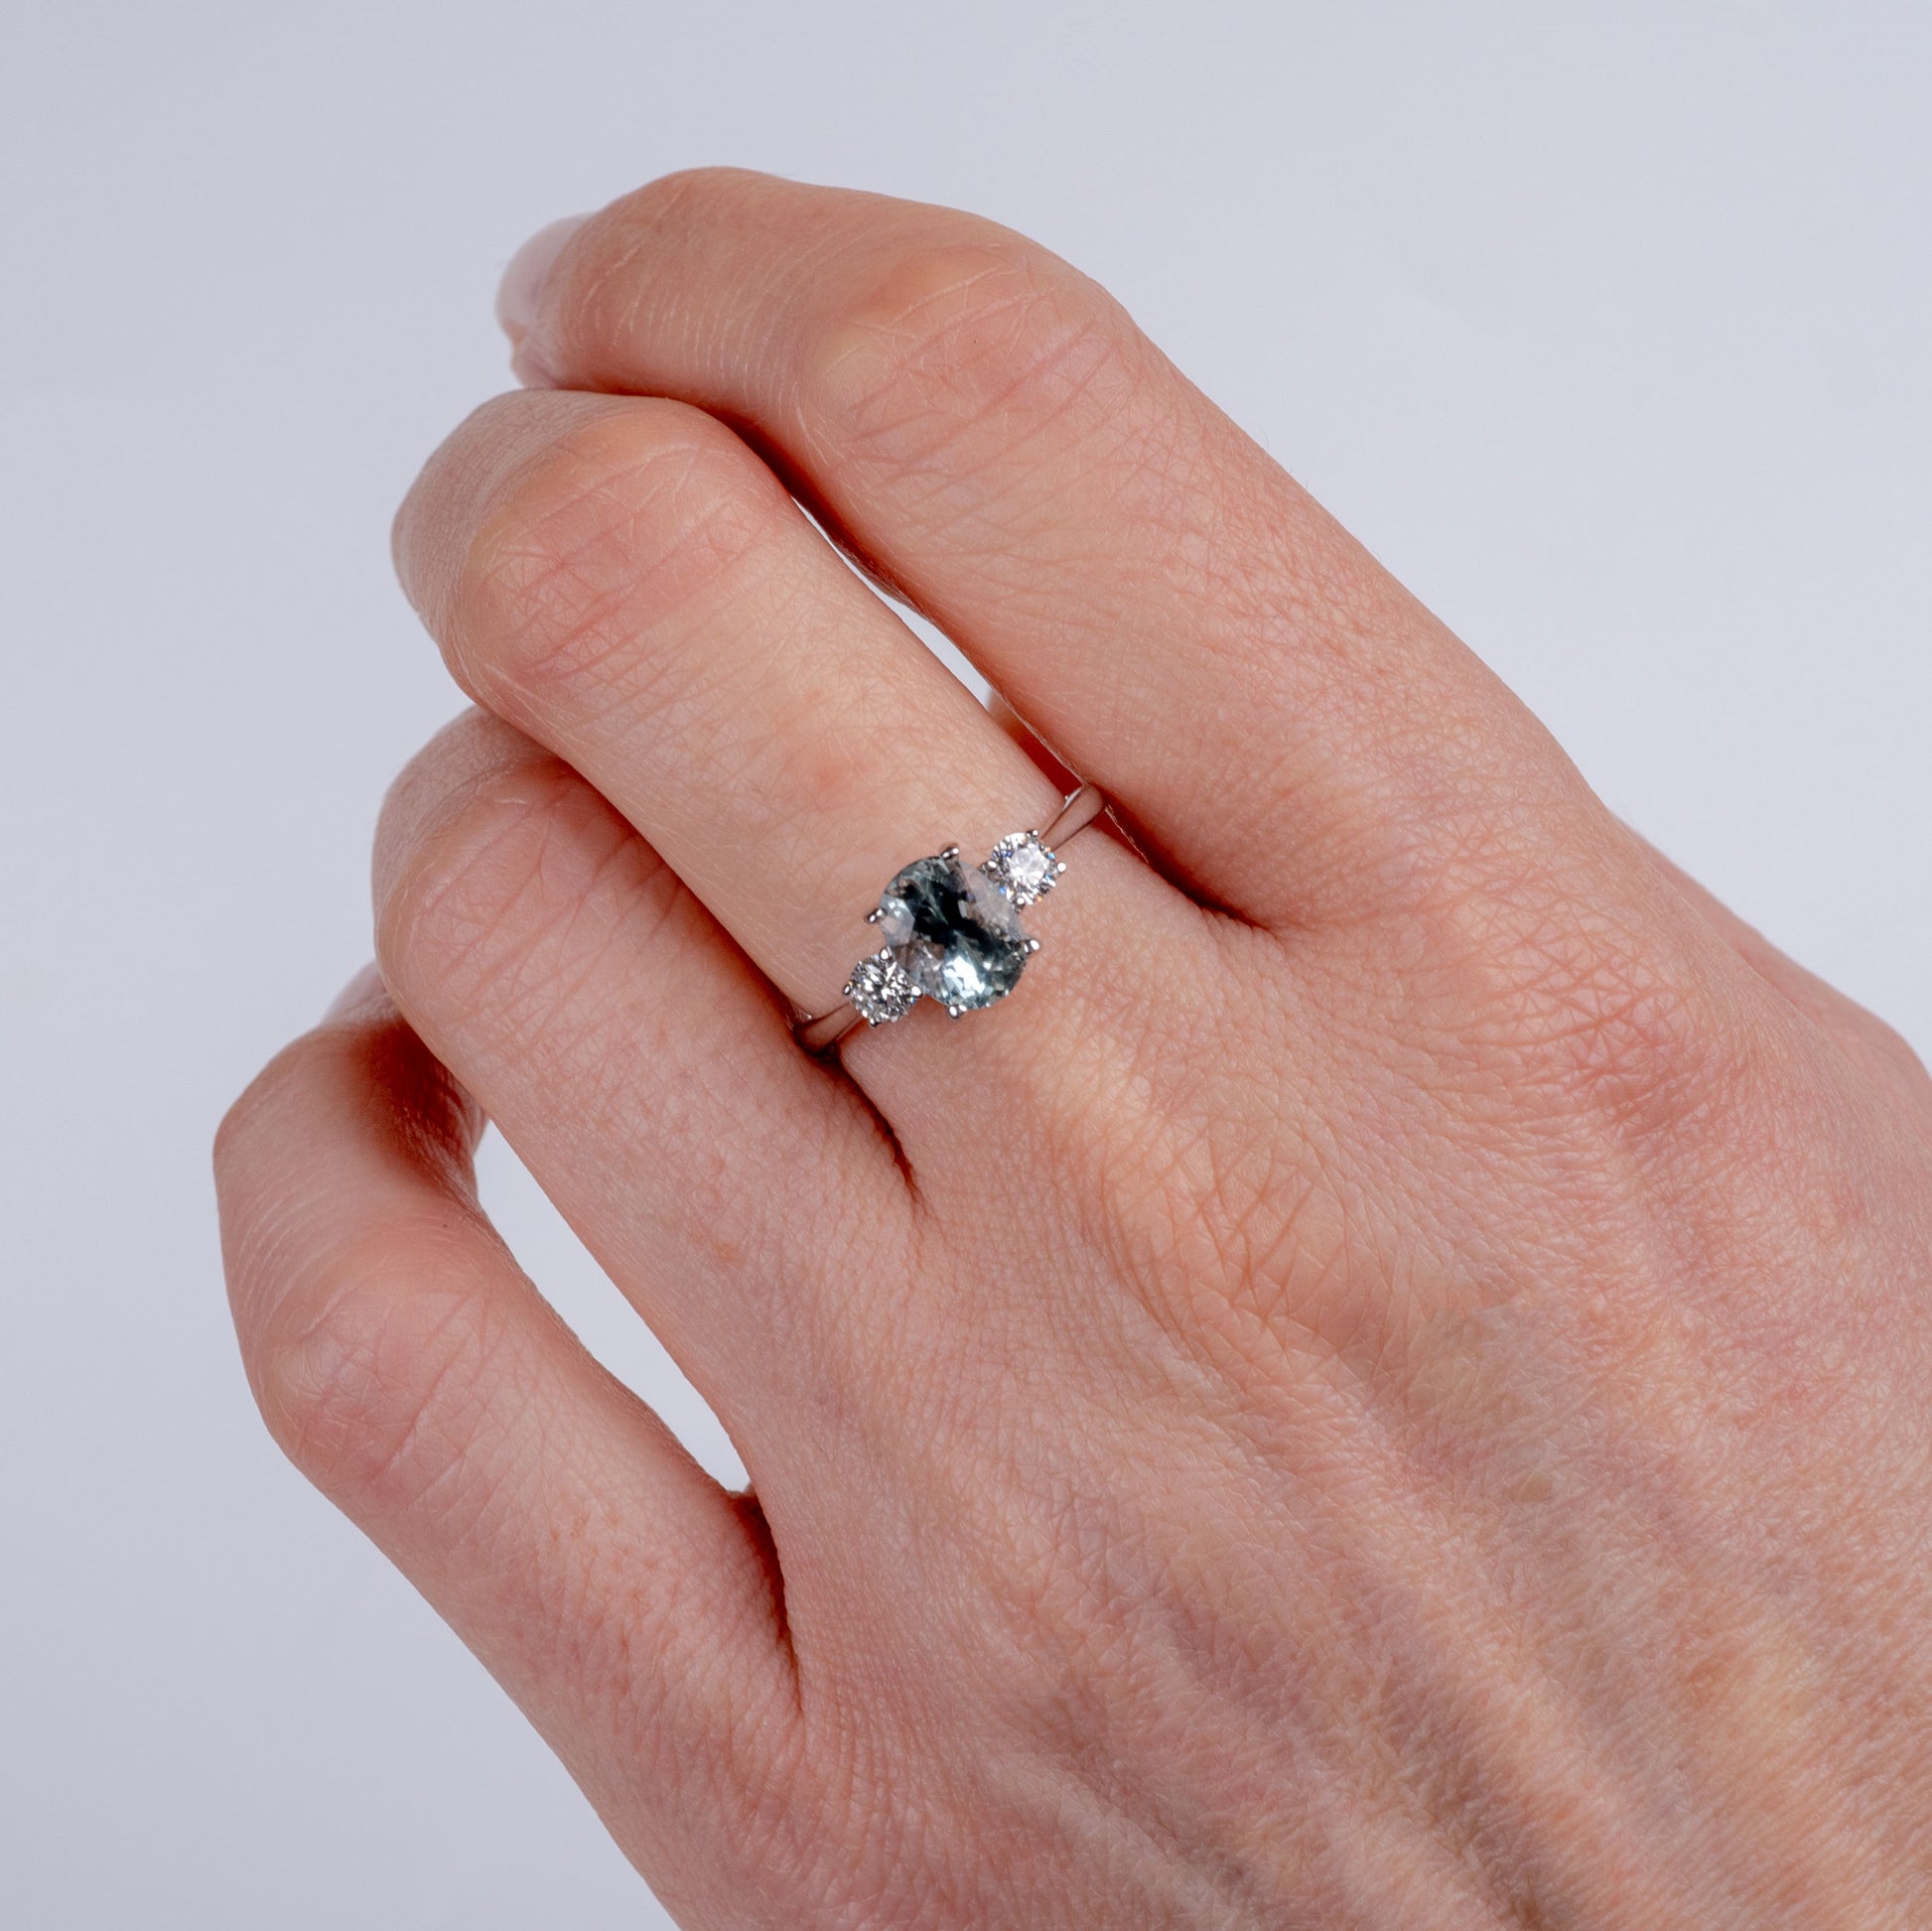 Aquamarine & Diamond Three Stone Ring 18k White Gold-Gemstone Rings-Hunters Fine Jewellery